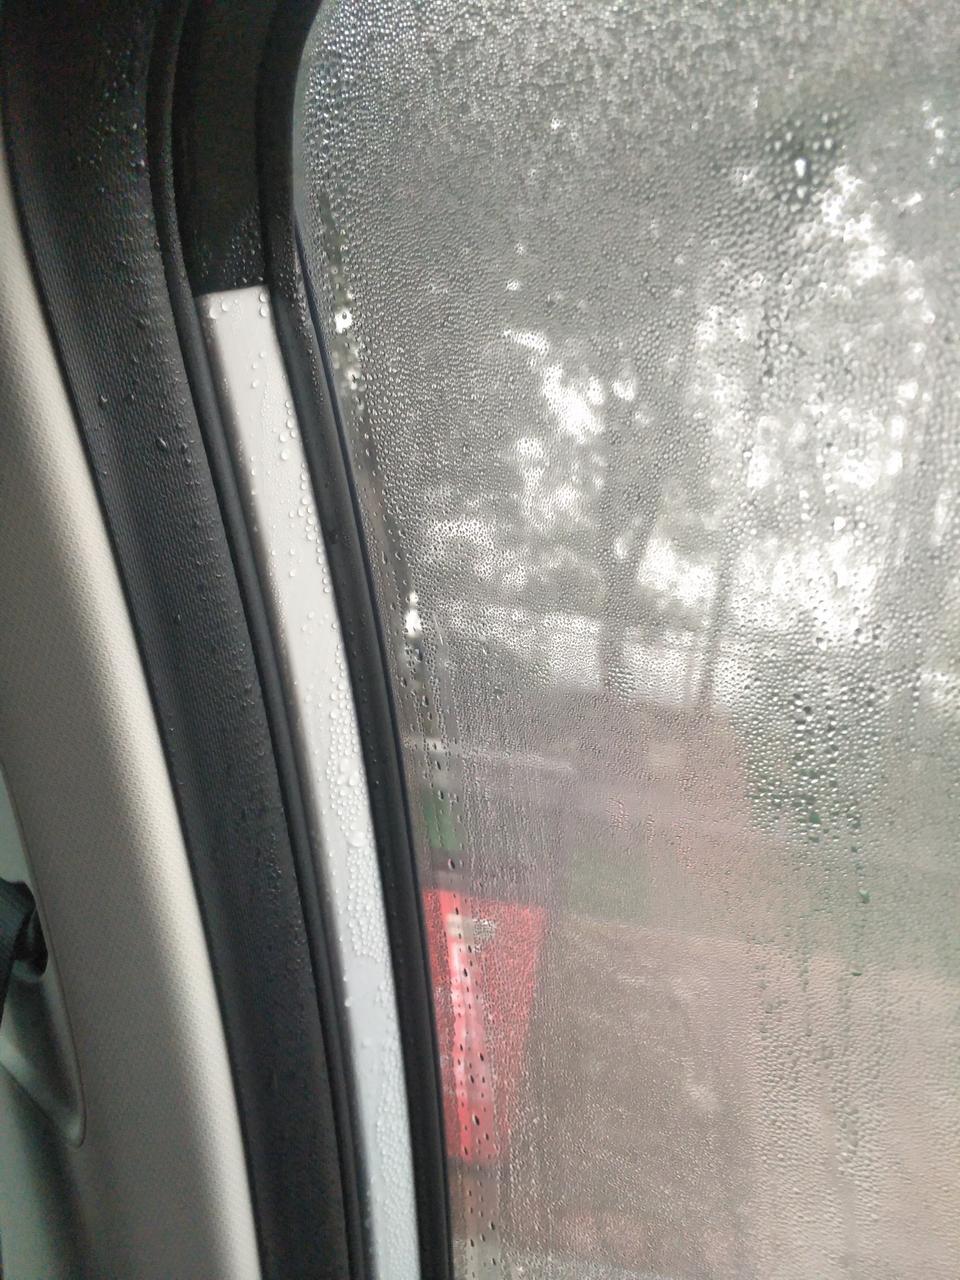 荣威i5问下各位老铁们，早上起来开车发现车窗里面全是水珠，前面玻璃也是，里面有，外面没有，这是什么情况导致